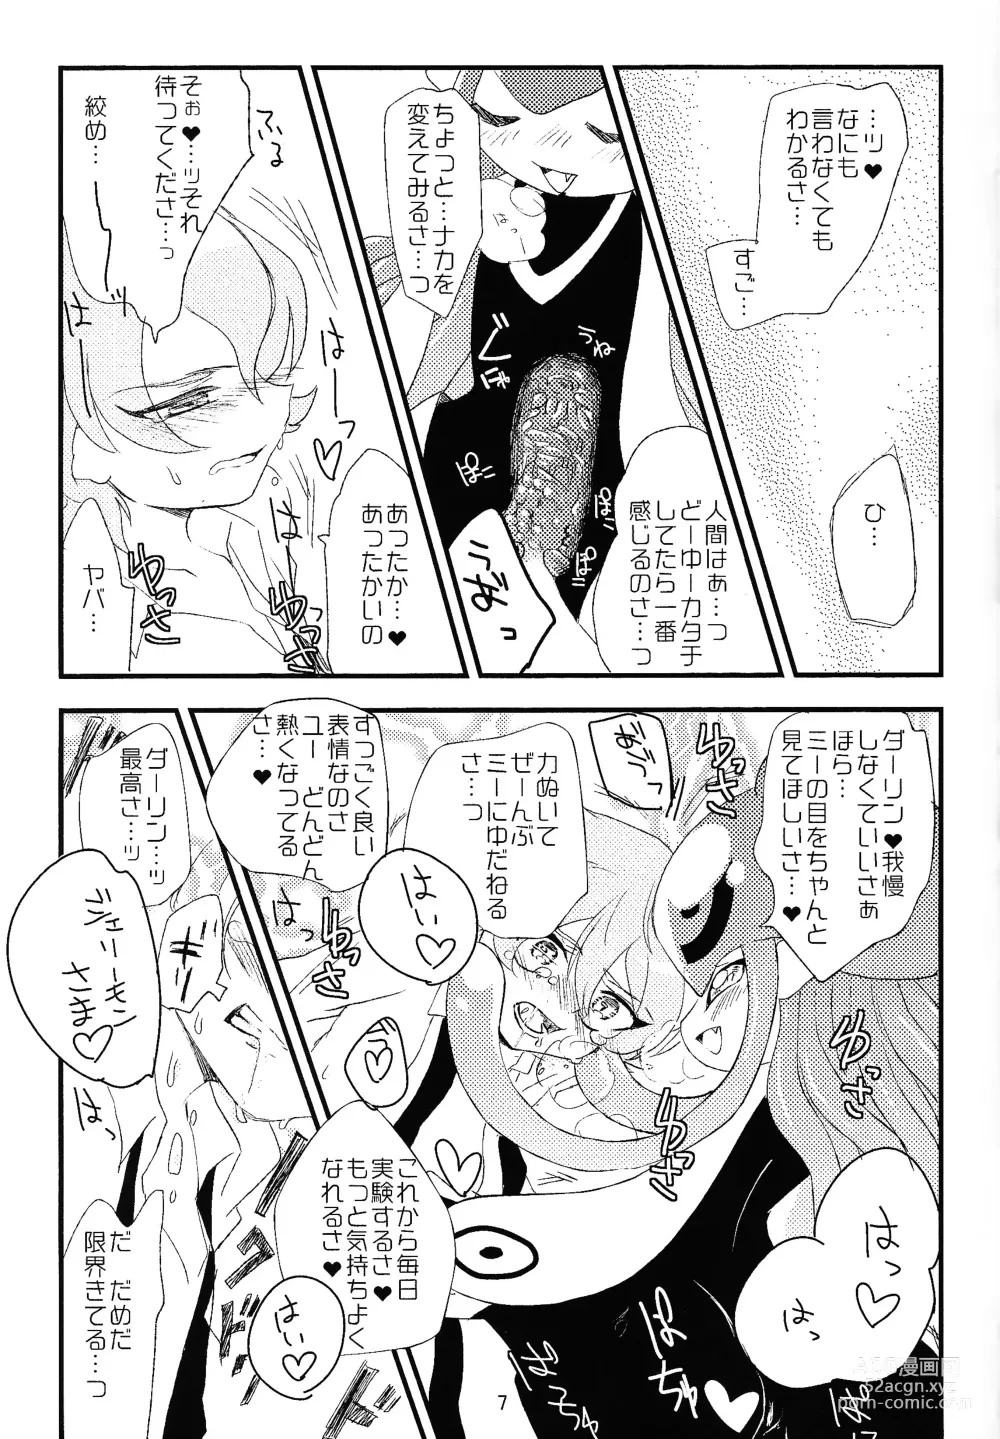 Page 8 of doujinshi Chusei kokoro ikusei gairon 1